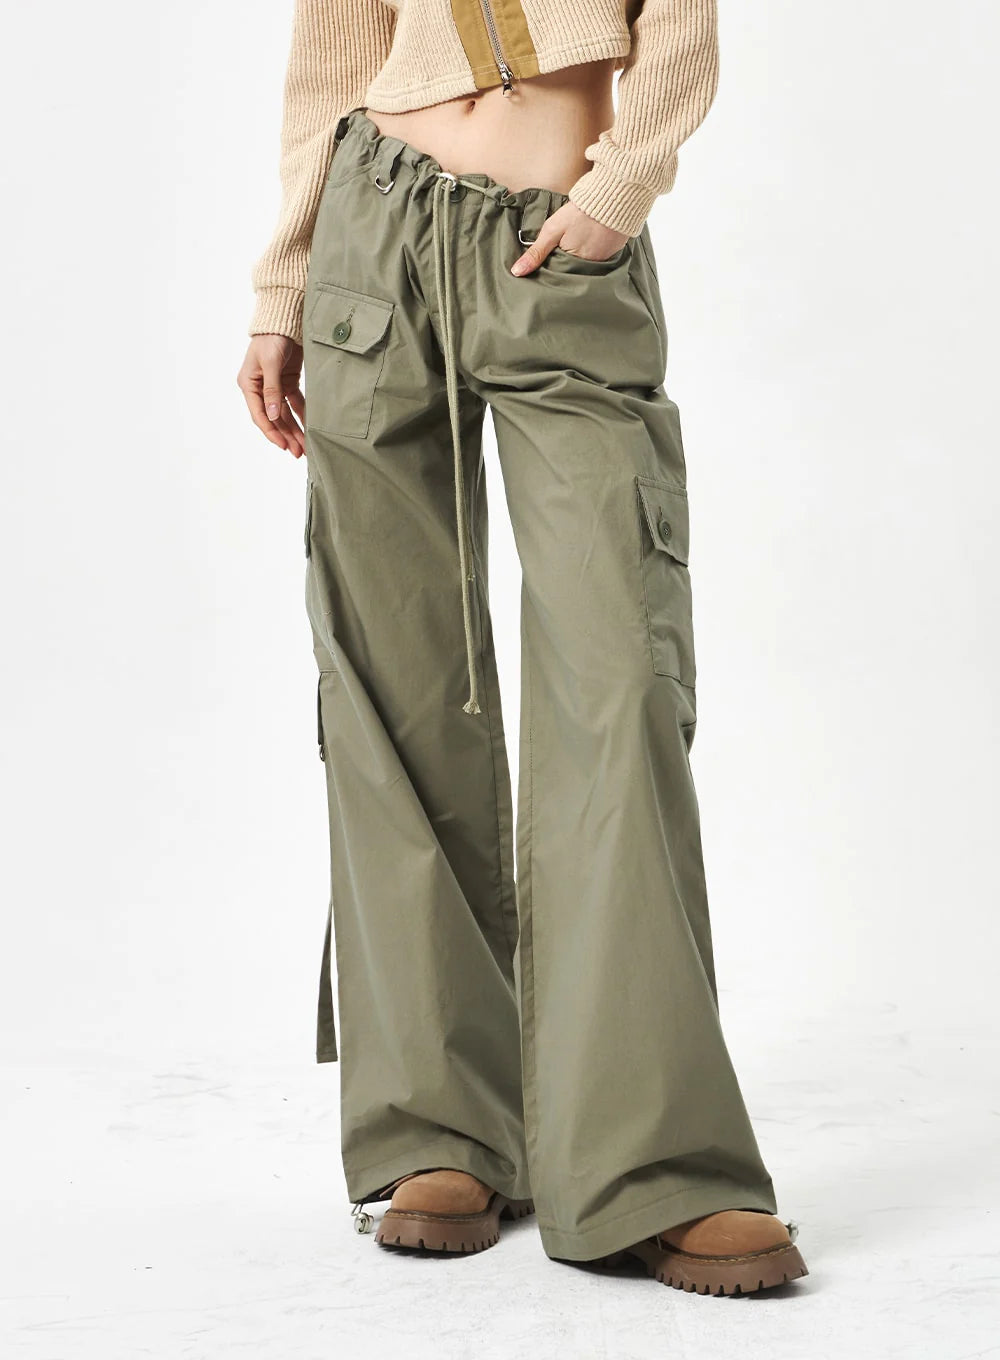 Olyvenn Deals Women's Bottoms Cargo Pants For Girls Fashion Full